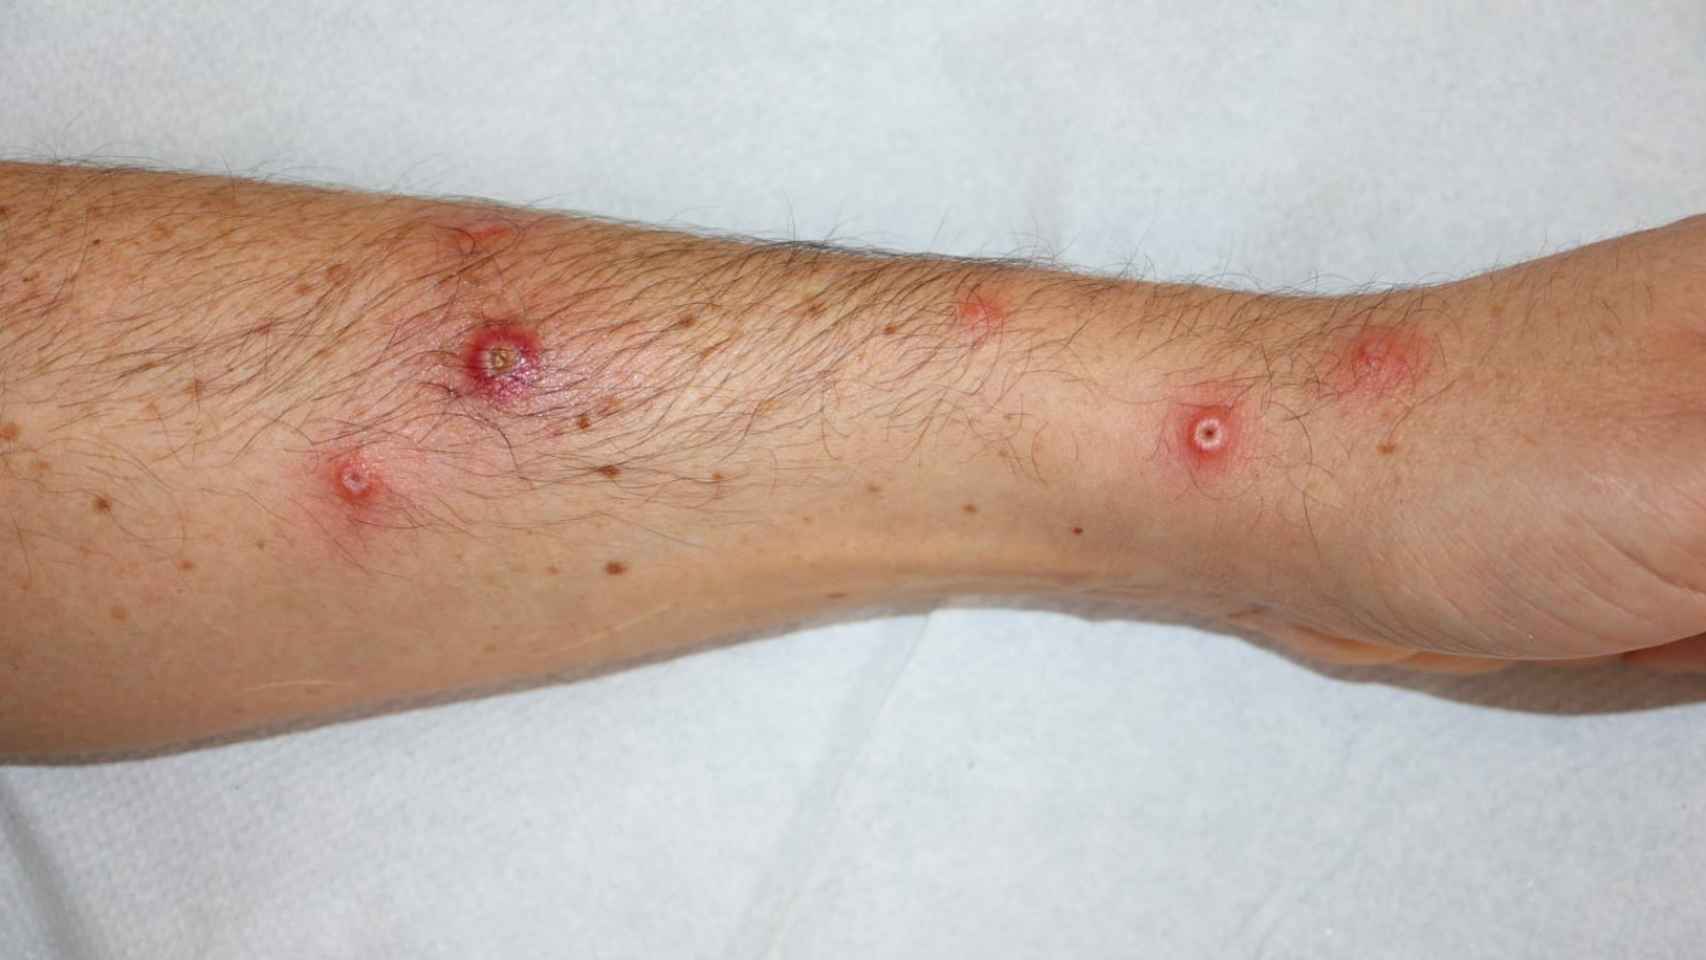 Lesiones en el brazo de un paciente del estudio.